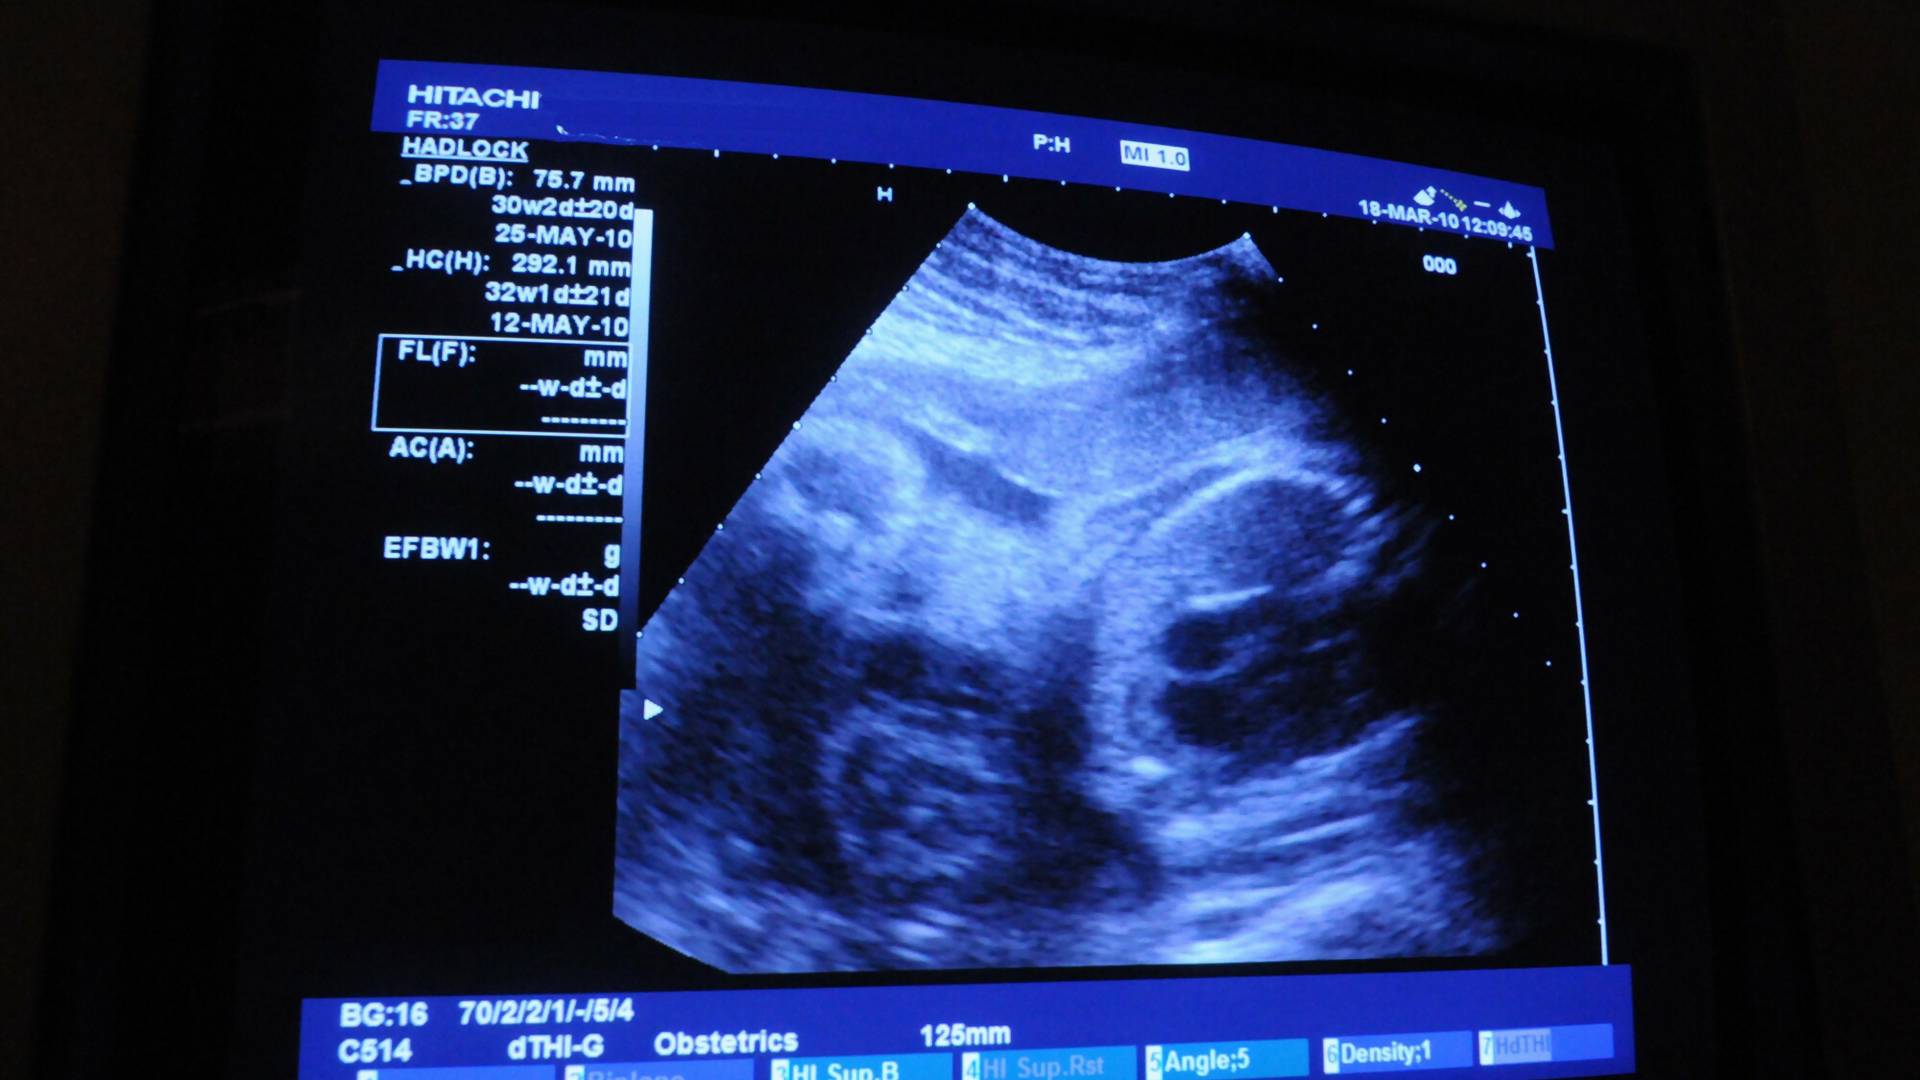 PiS planuje rejestr ciąż? Aktywistki uspokajają: "nie zakładamy najgorszego"